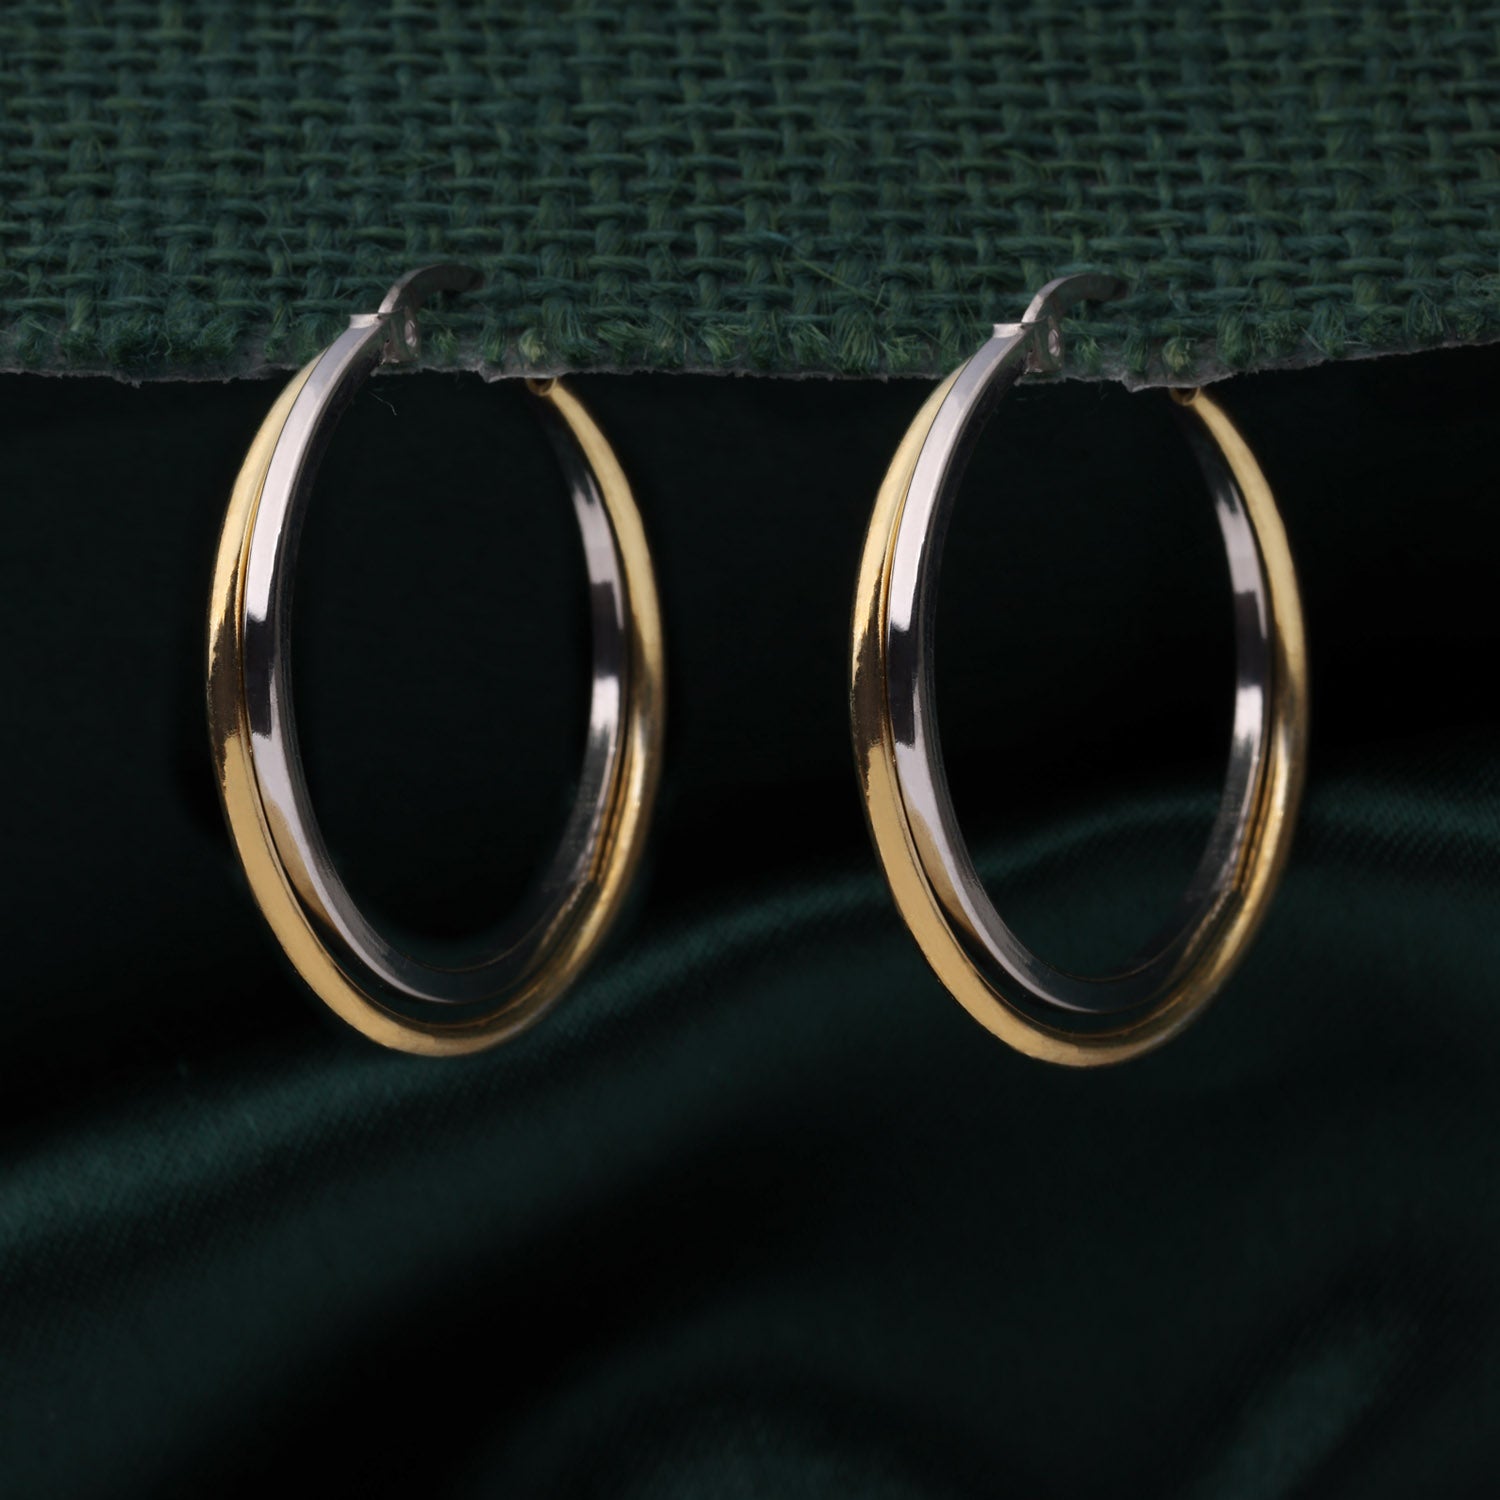 Sterling Silver Duo-Tone Hoop Earrings | SKU : 0002930138, 0002930169, 0002930152, 0002930121, 0002930176, 0002930114, 0003109748